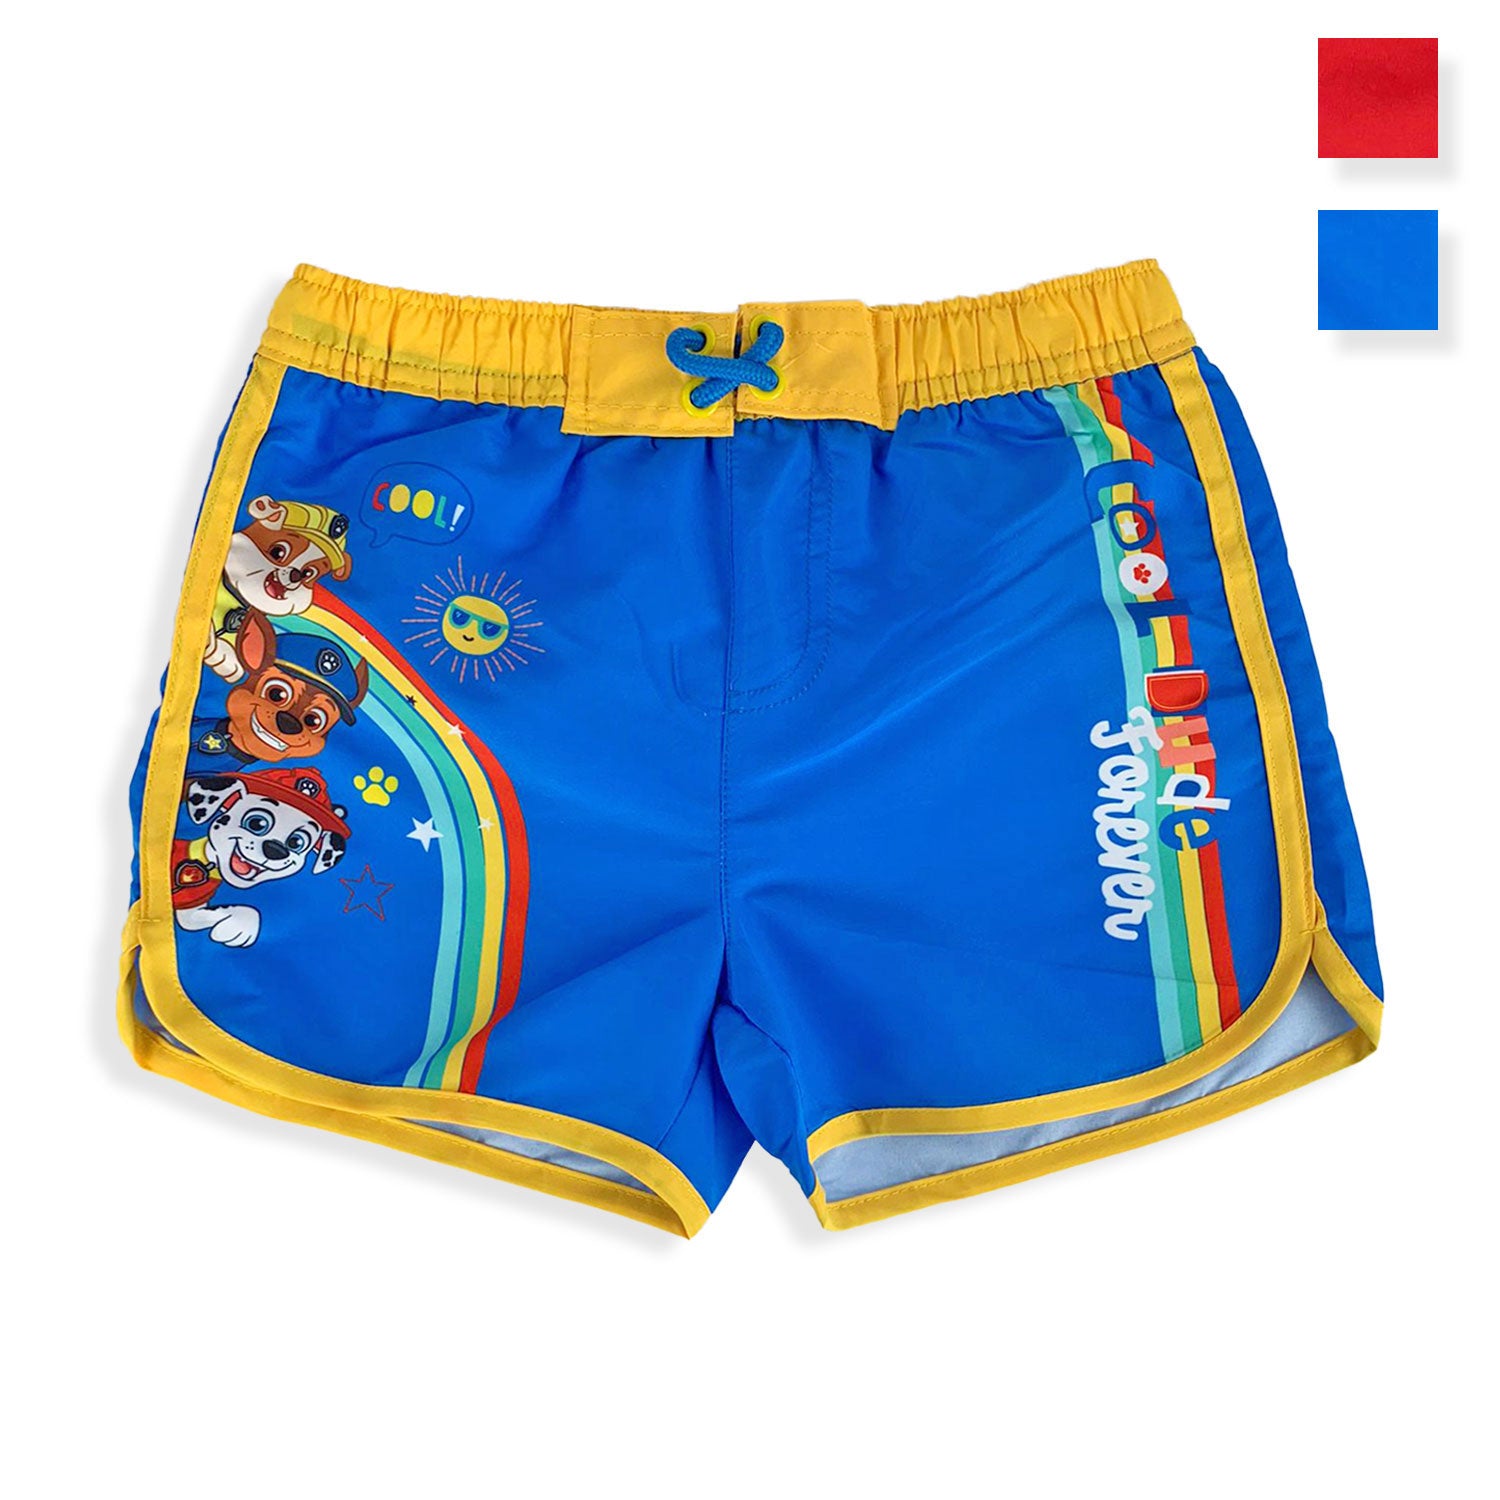 Costume mare Paw Patrol ufficiale pantaloncino boxer bimbo piscina 5368